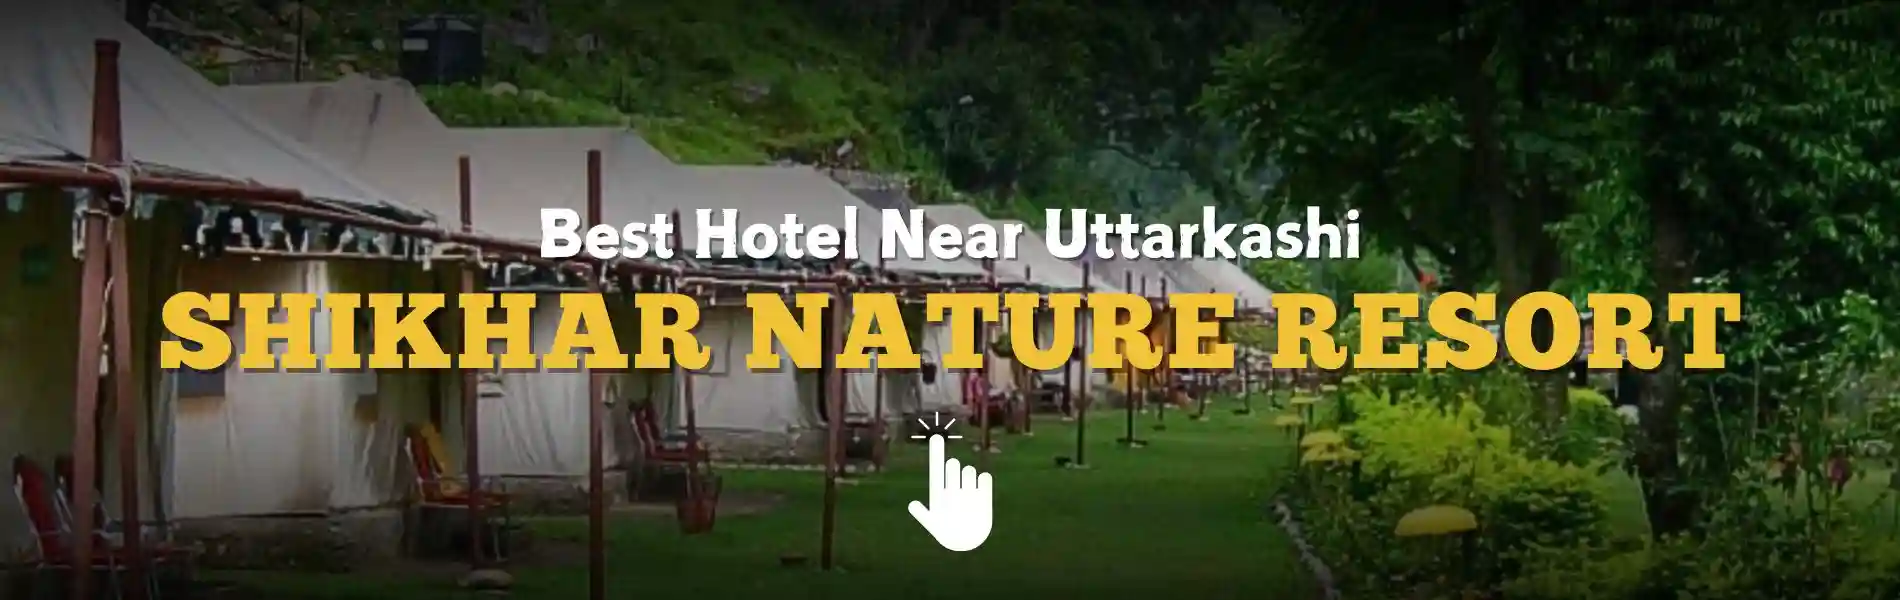 Hotels Near Uttarkashi
